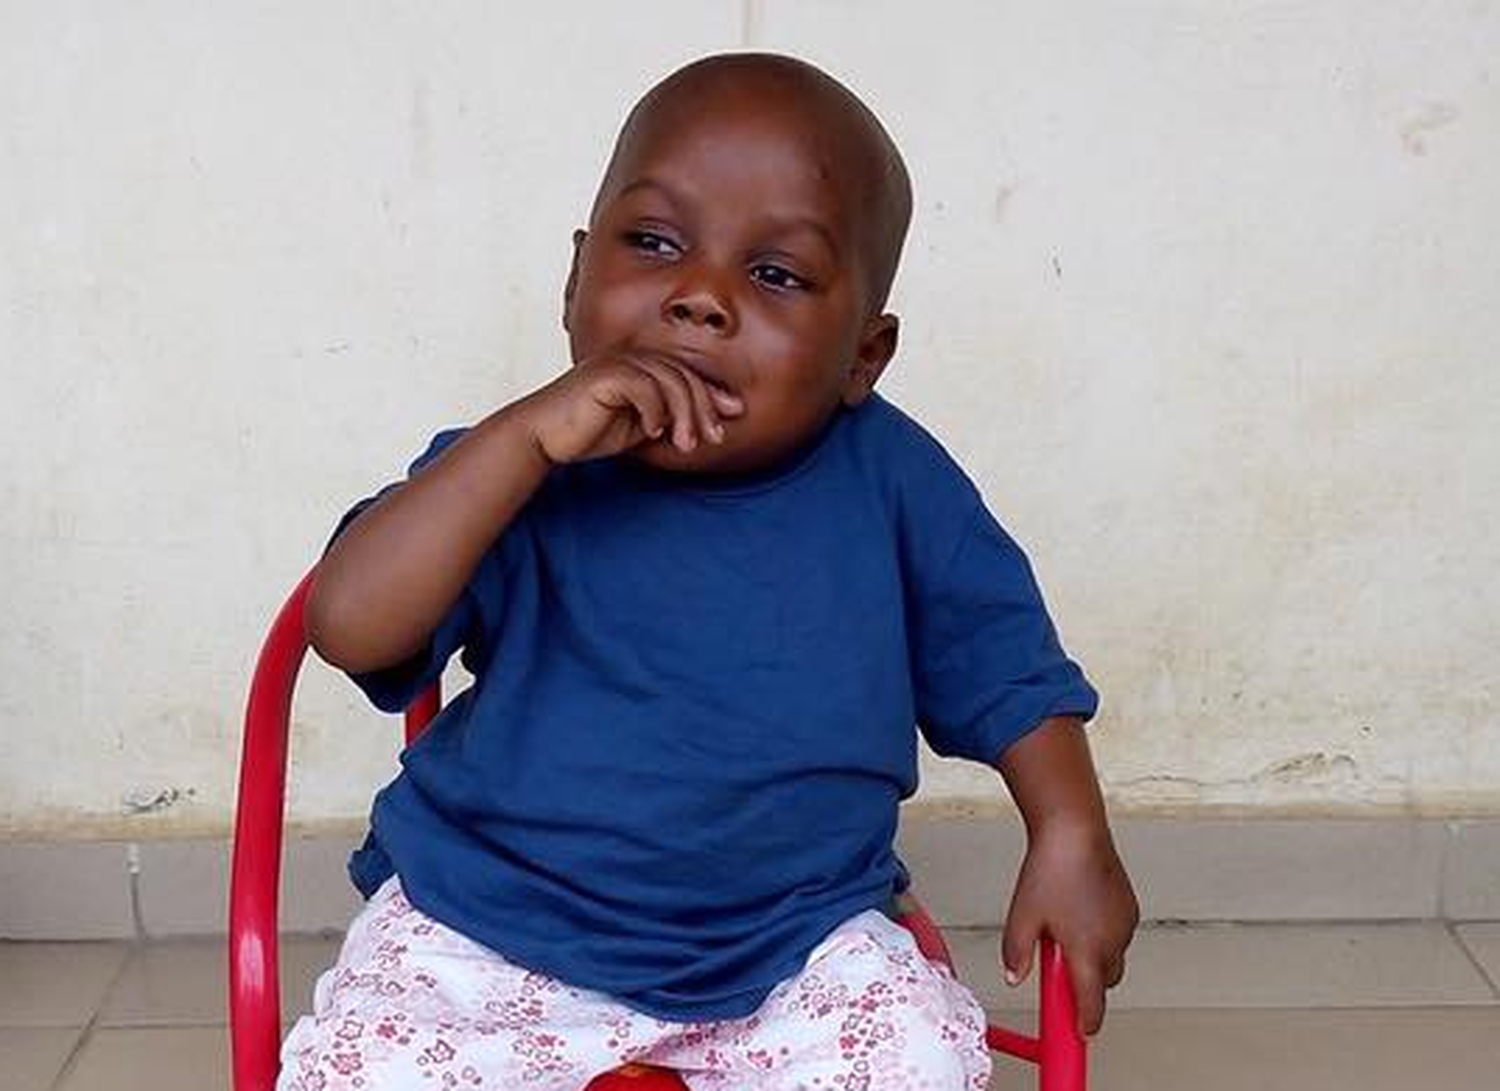 La milagrosa recuperación del niño famélico auxiliado antes de morir en África